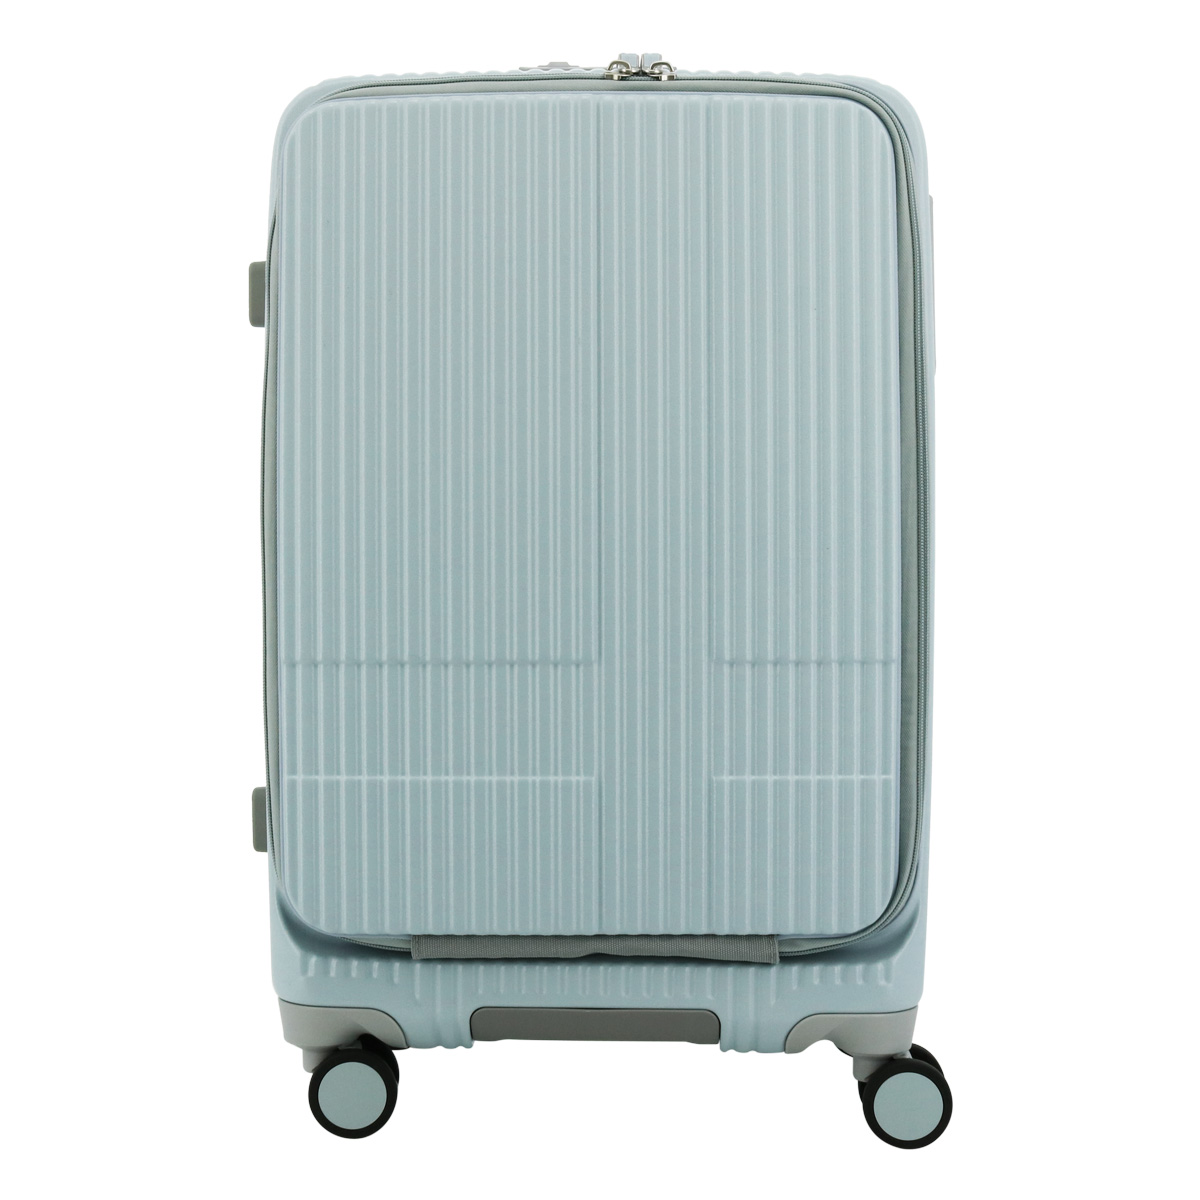 イノベーター スーツケース EXTREME INV155 軽量 55L 62cm 3.9kg 